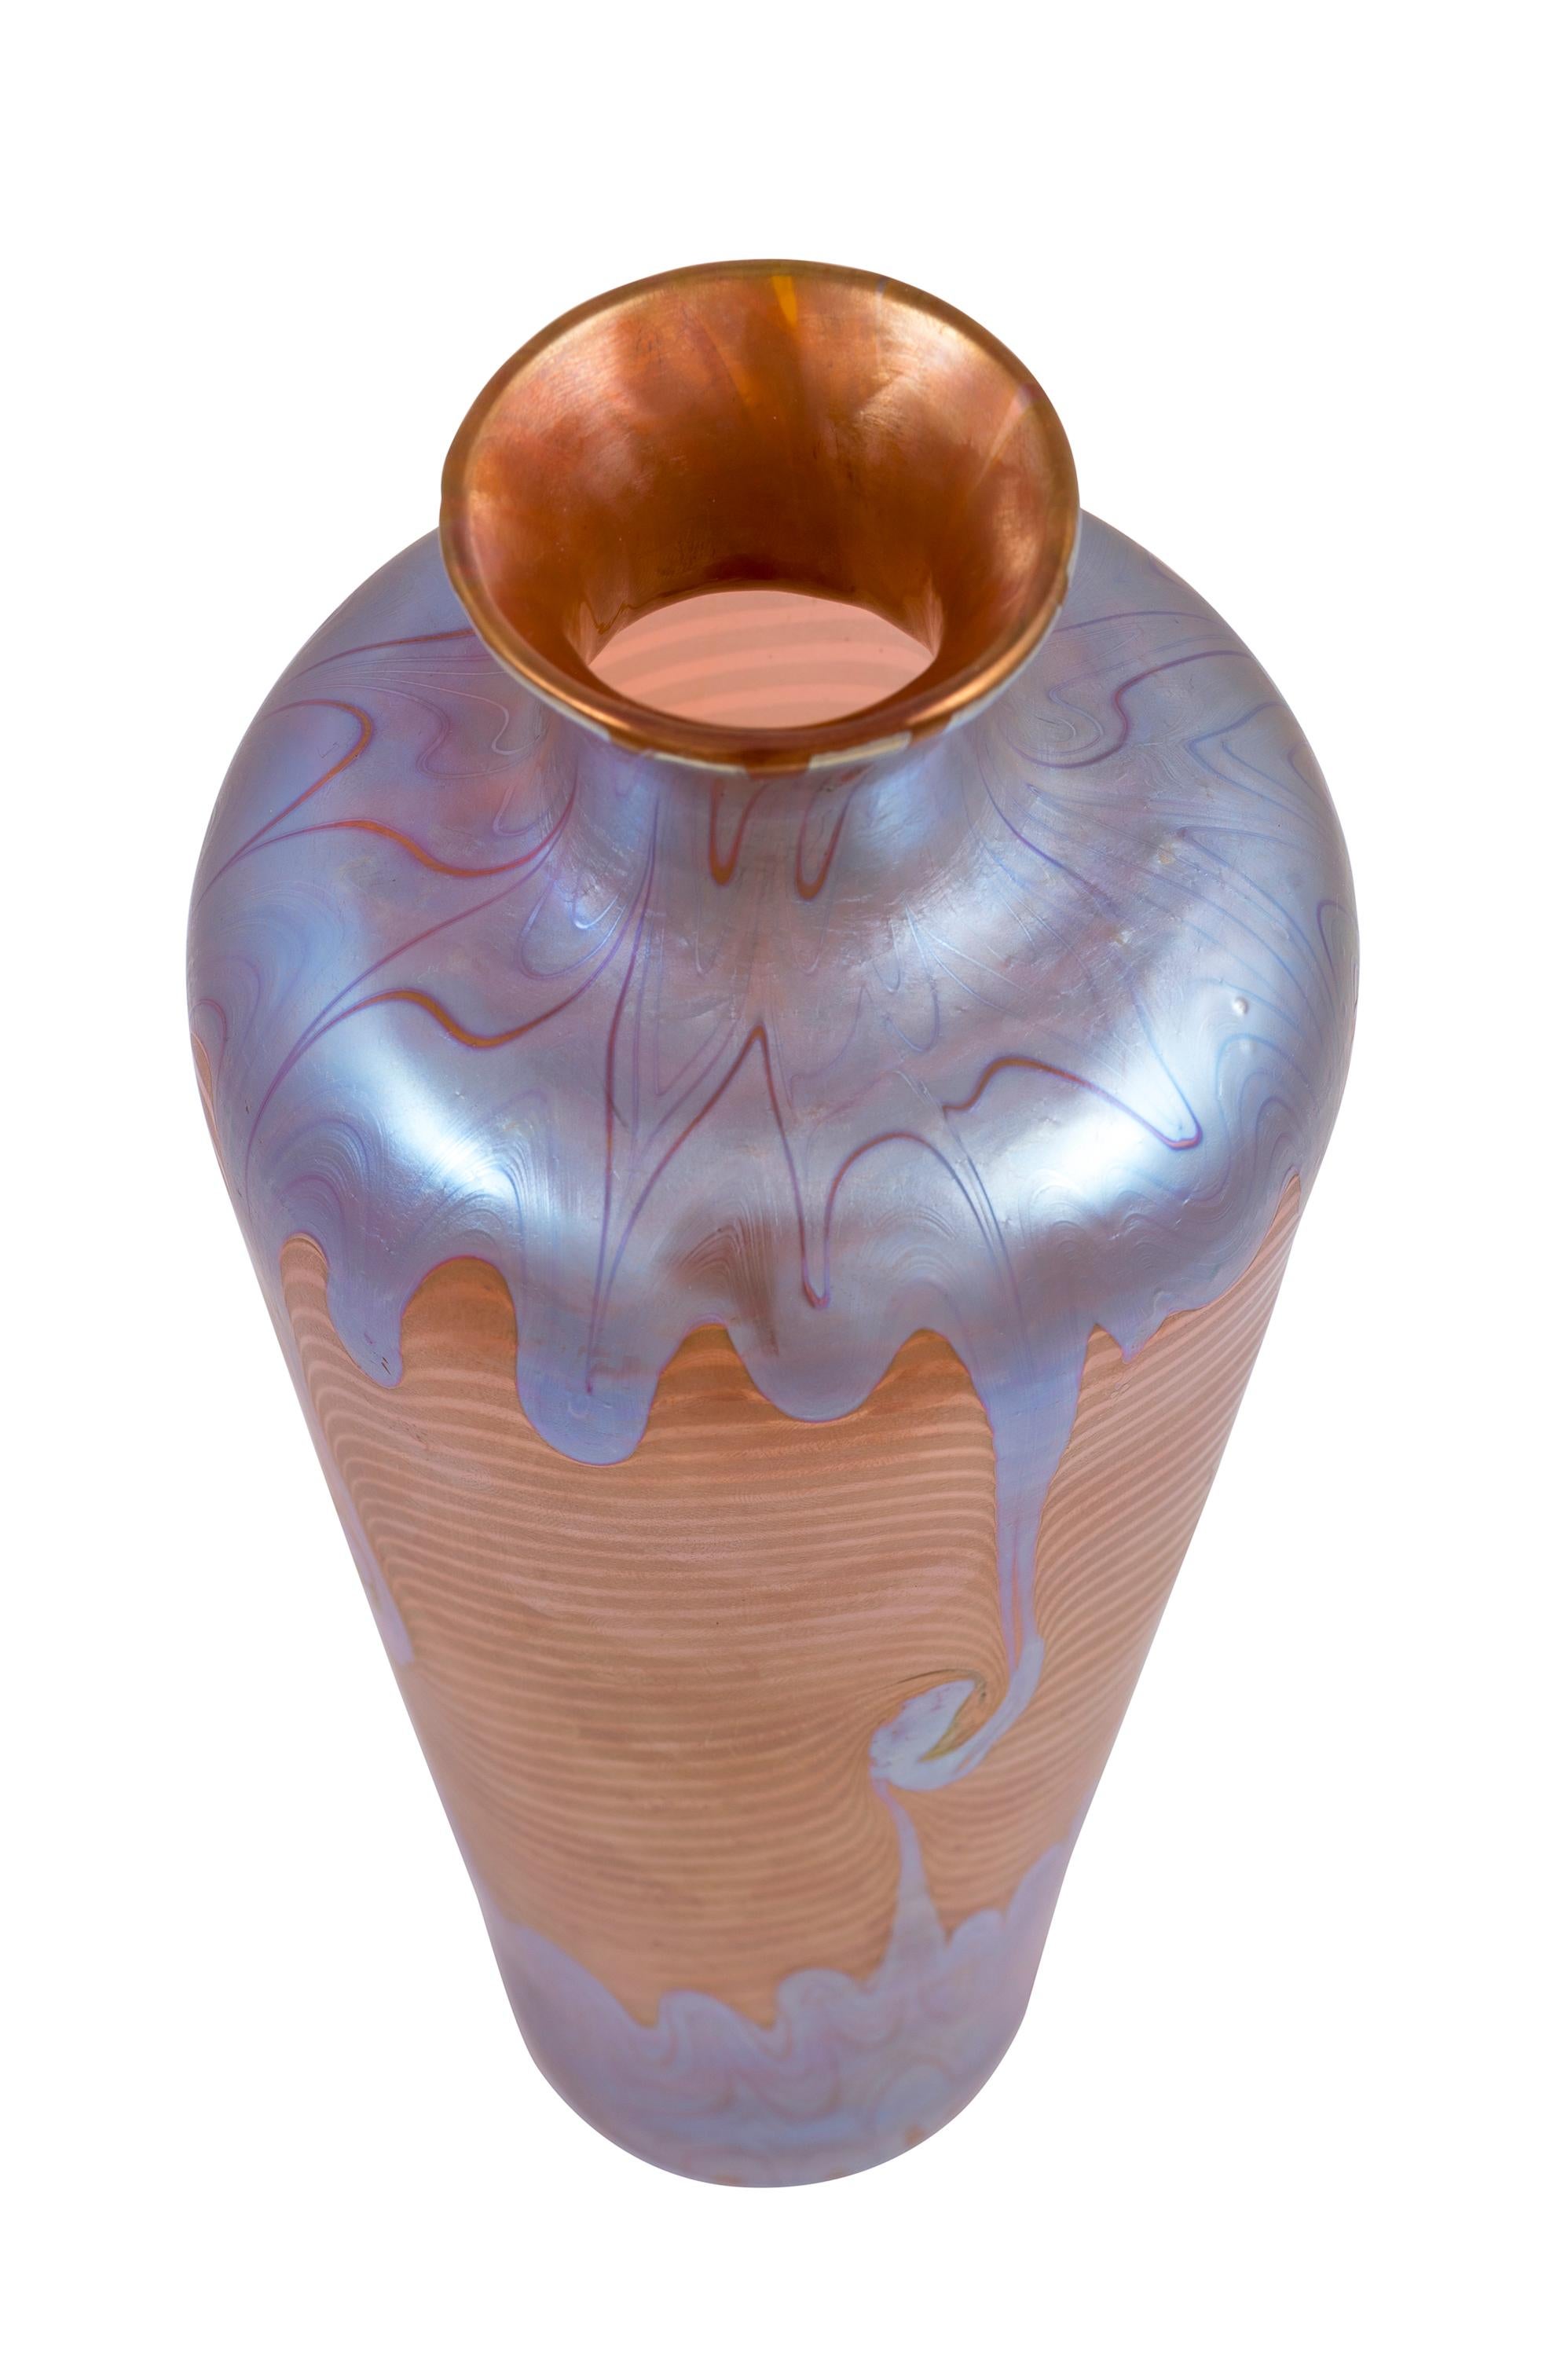 Austrian Glass Vase Loetz PG 1/214 Decoration circa 1901 Orange Blue Silver Art Nouveau For Sale